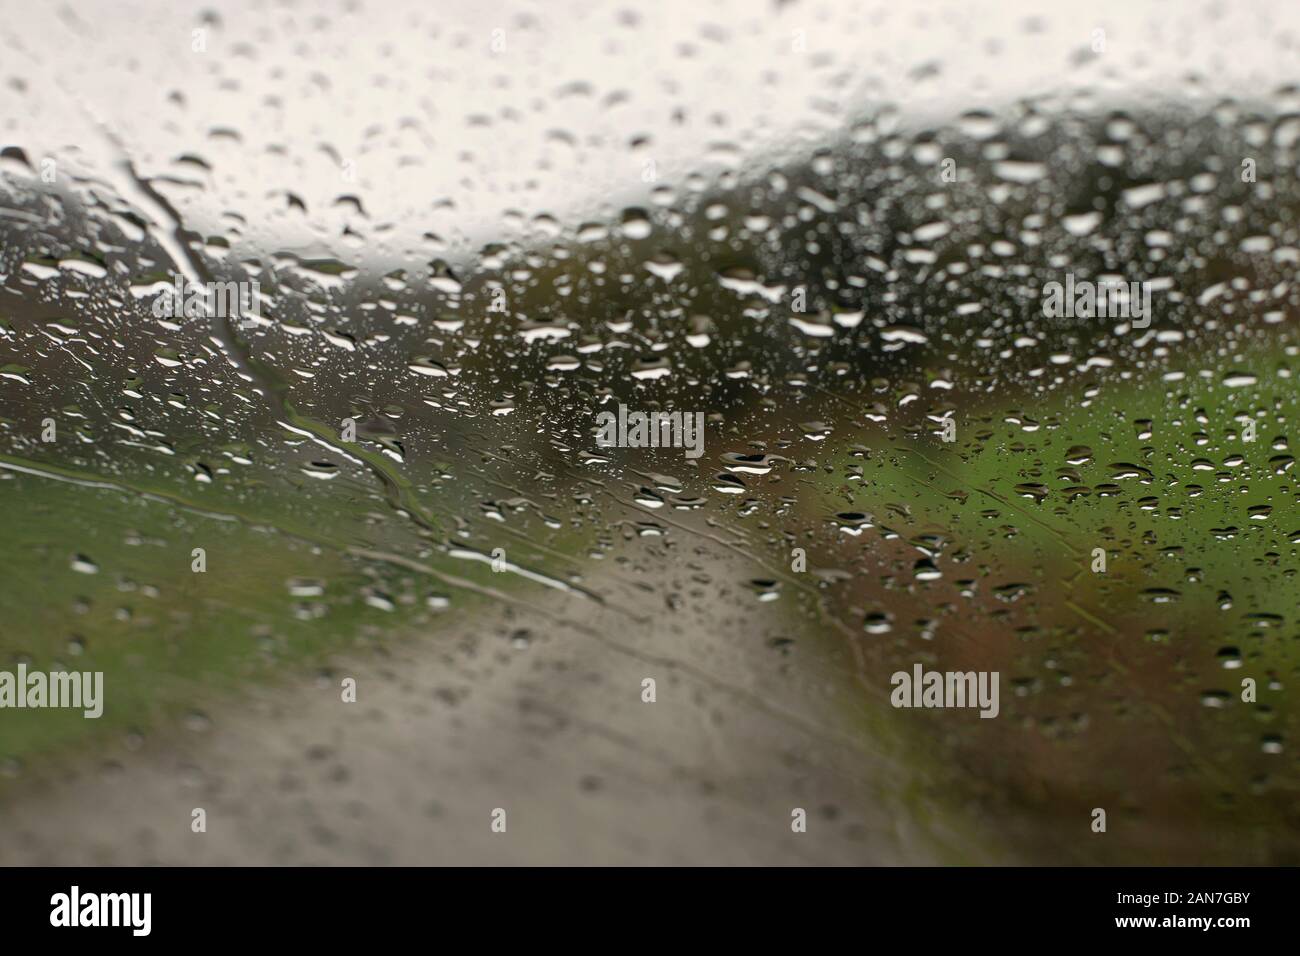 Las gotas de lluvia sobre la superficie de cristal de coche Foto de stock